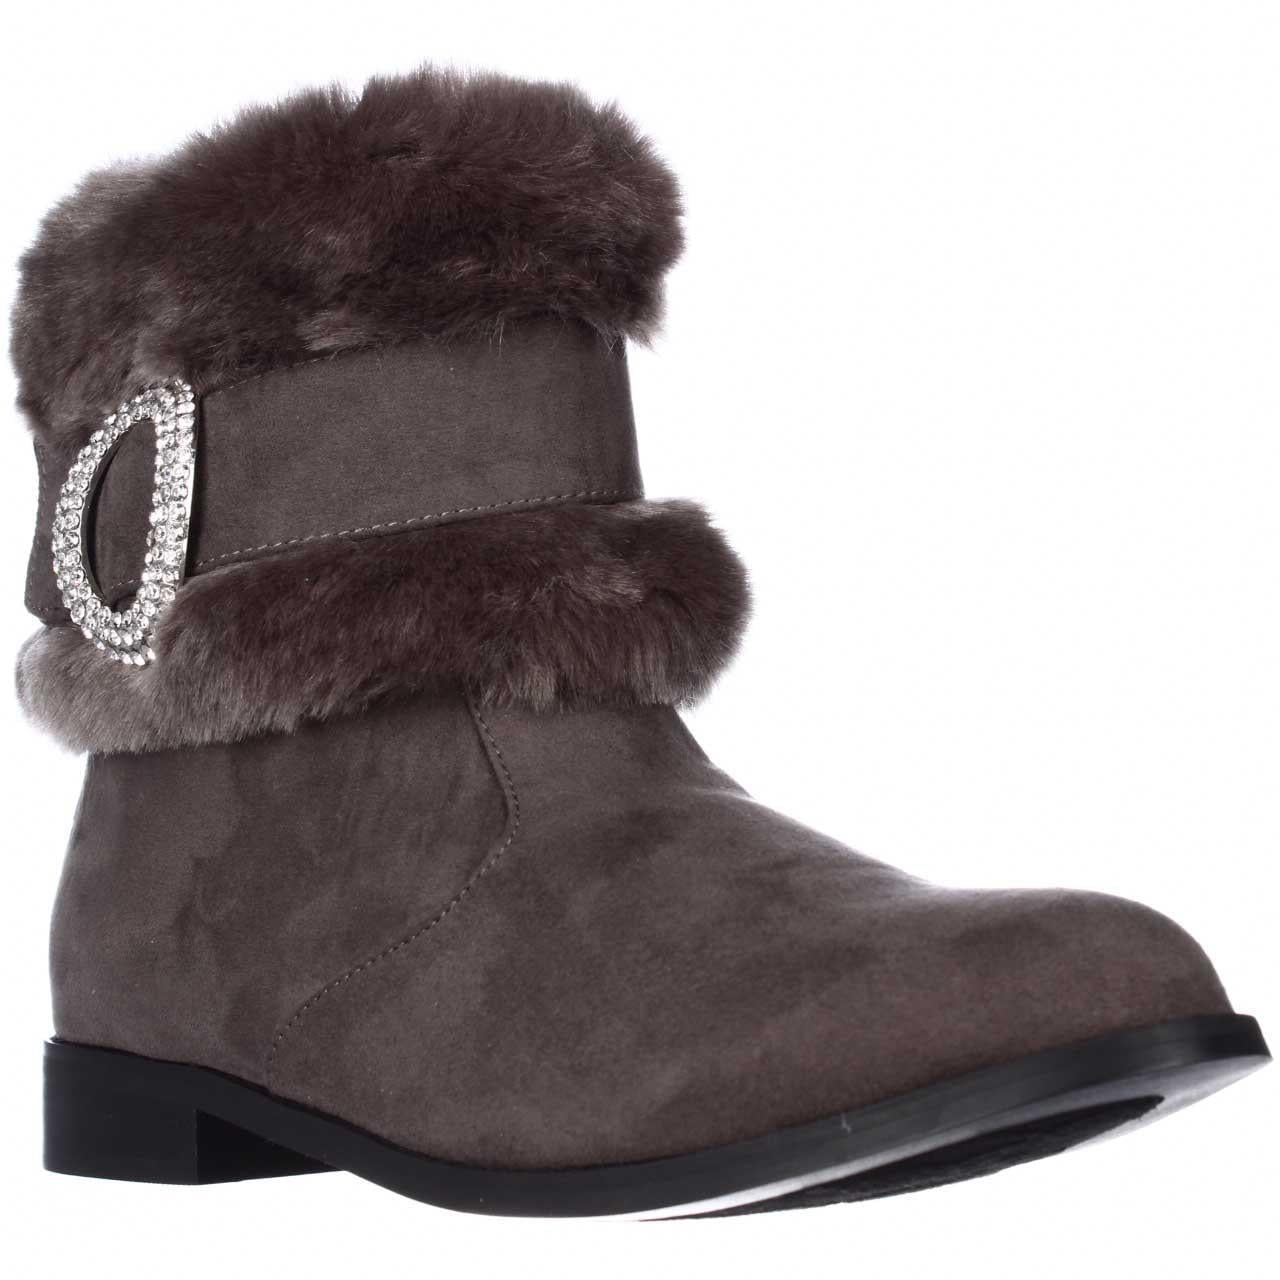 Womens Joan Boyce 443892 Jewel Cuff Winter Ankle Boots, Grey - Walmart.com